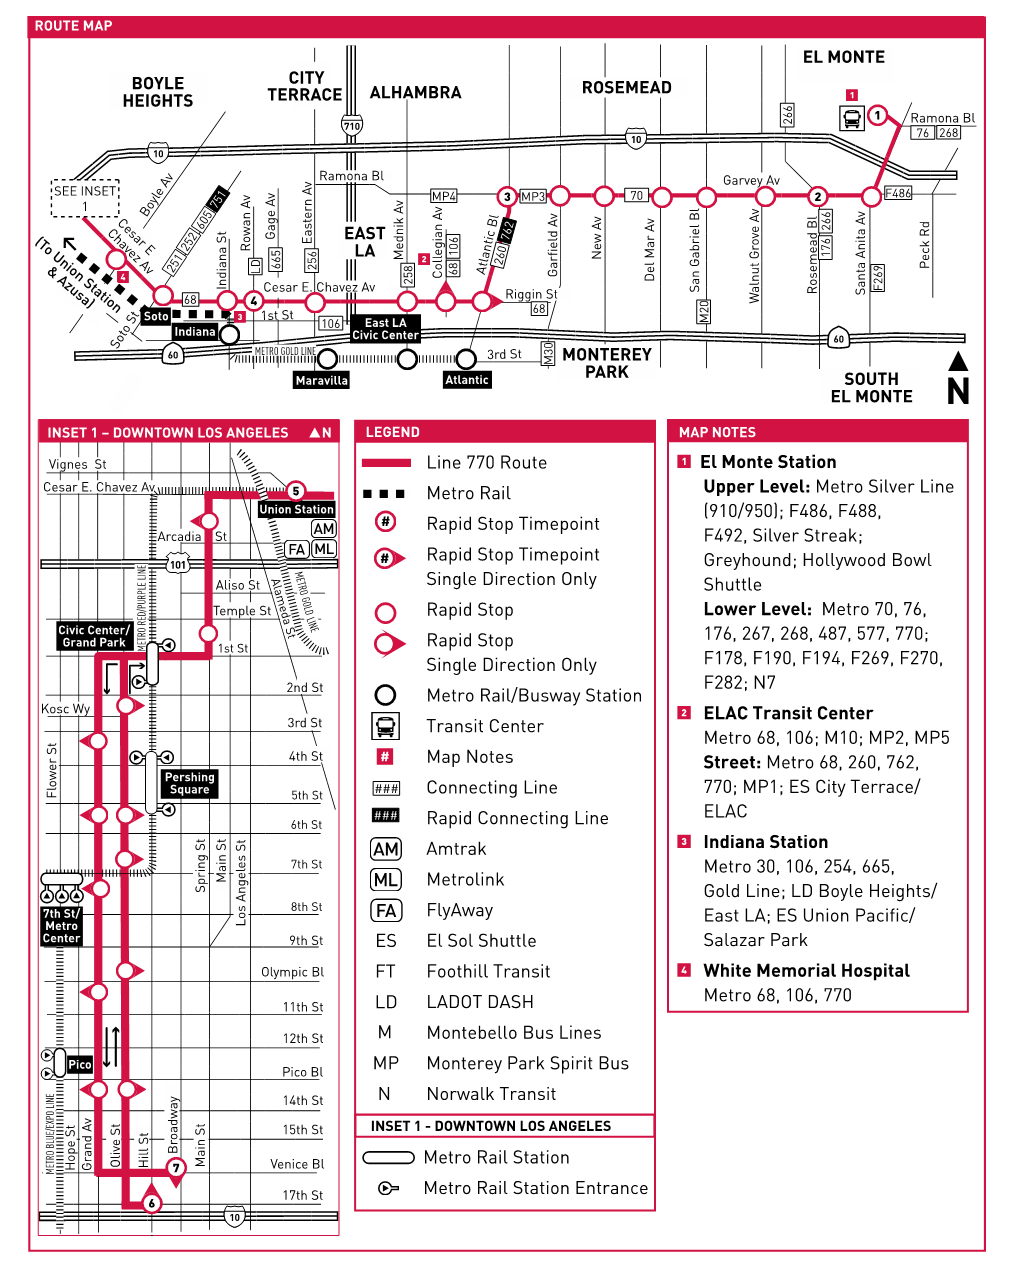 Line 770 (12/15/19) -- Metro Rapid